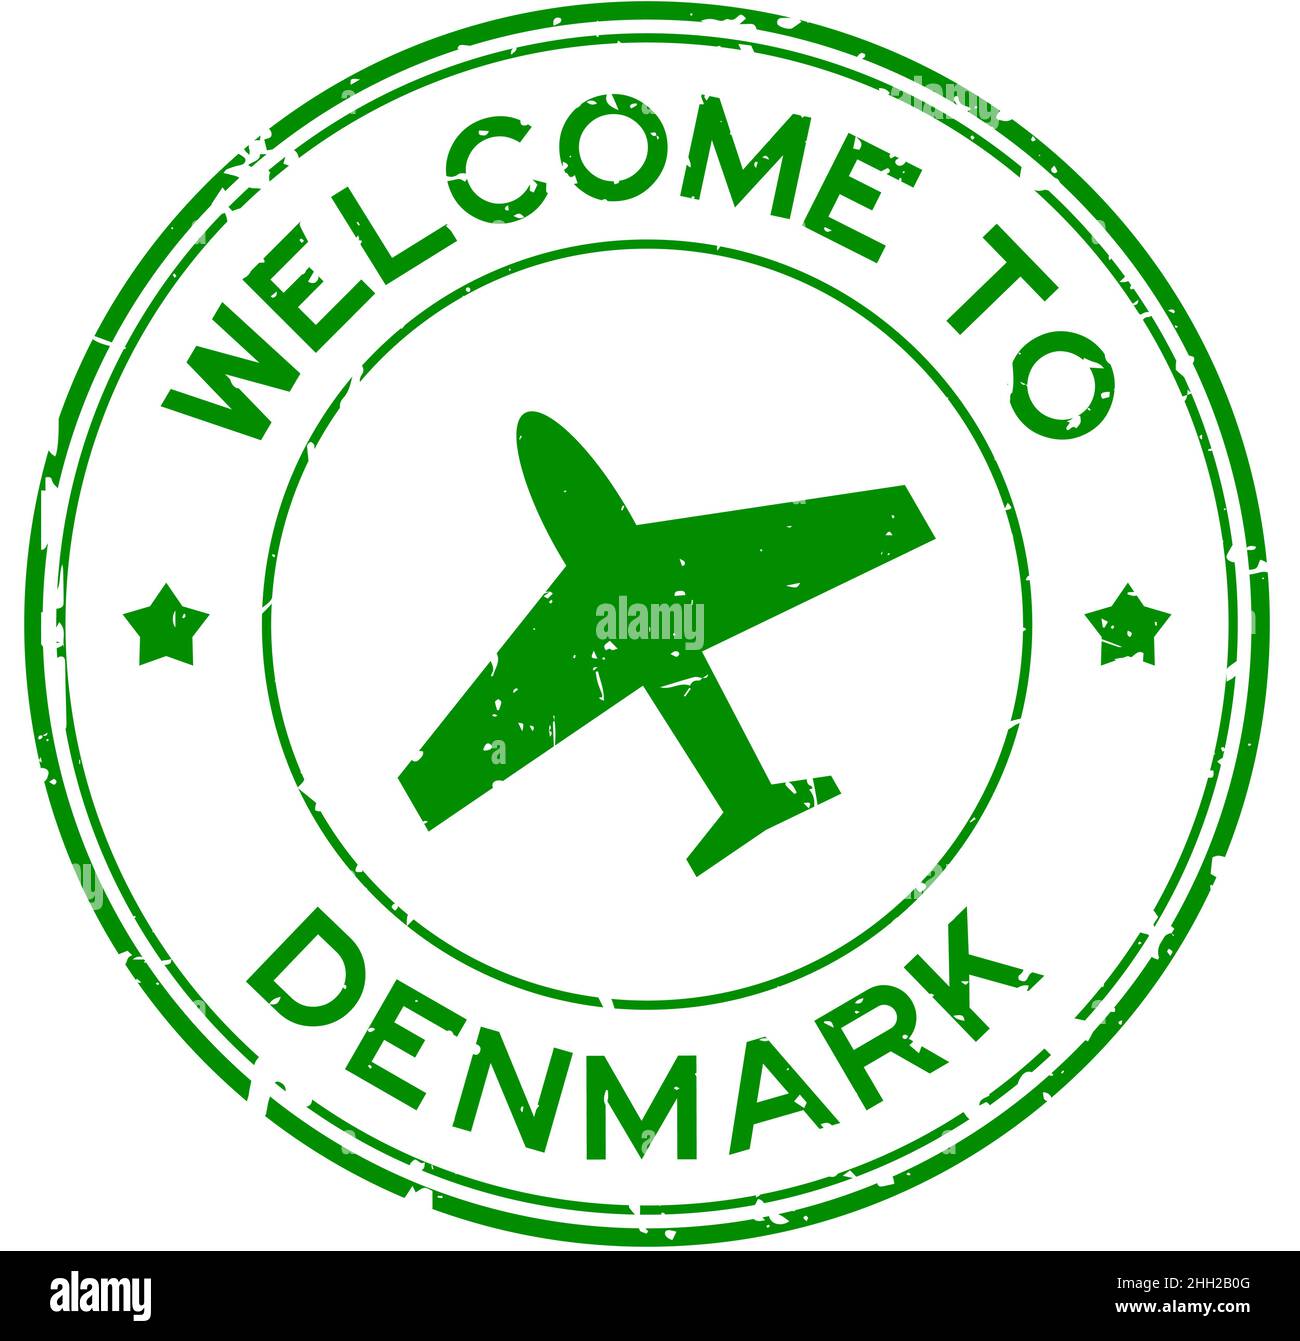 Grunge grün Willkommen in Dänemark Wort mit Flugzeug-Symbol rund Gummi-Siegel-Stempel auf weißem Hintergrund Stock Vektor